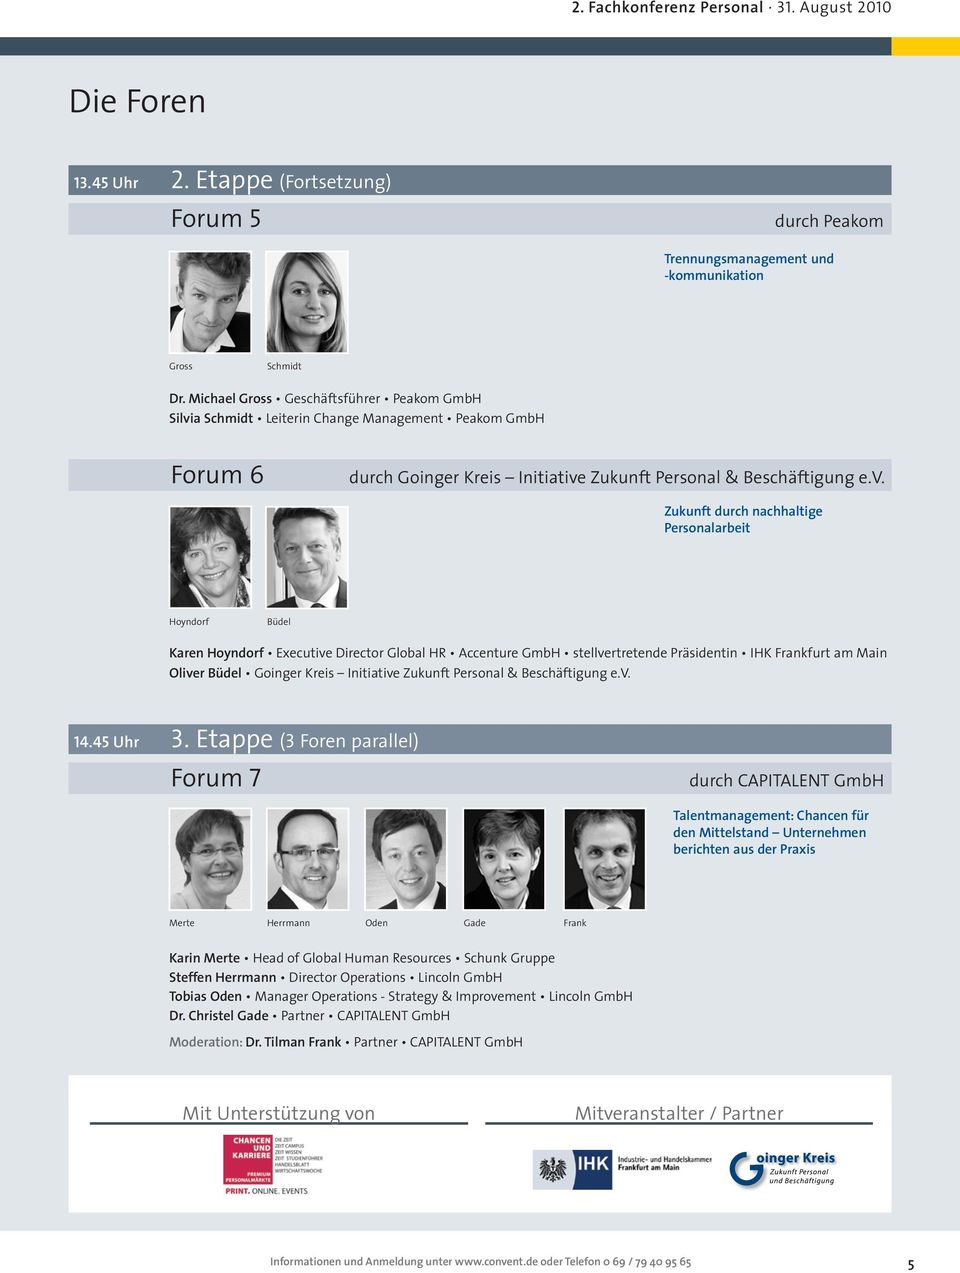 a Schmidt Leiterin Change Management Peakom GmbH Forum 6 Goinger Kreis Initiative